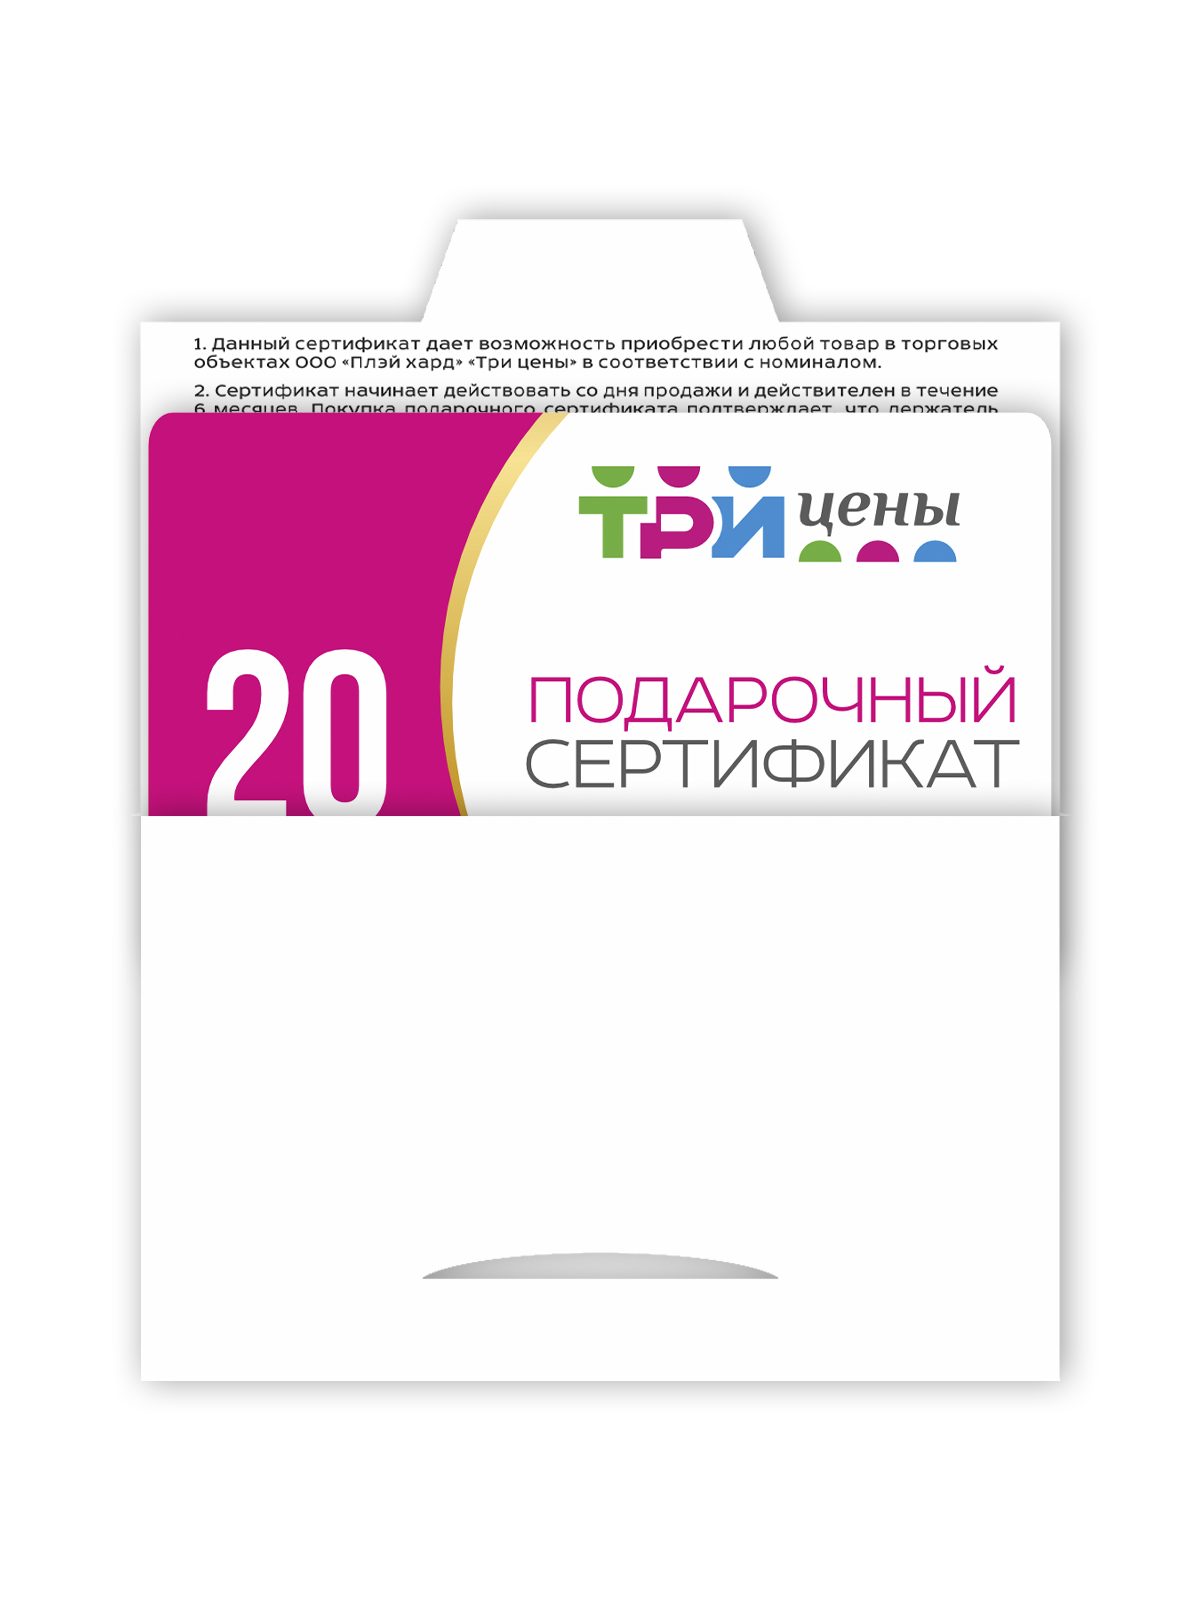 Подарочный сертификат на сумму 20 рублей